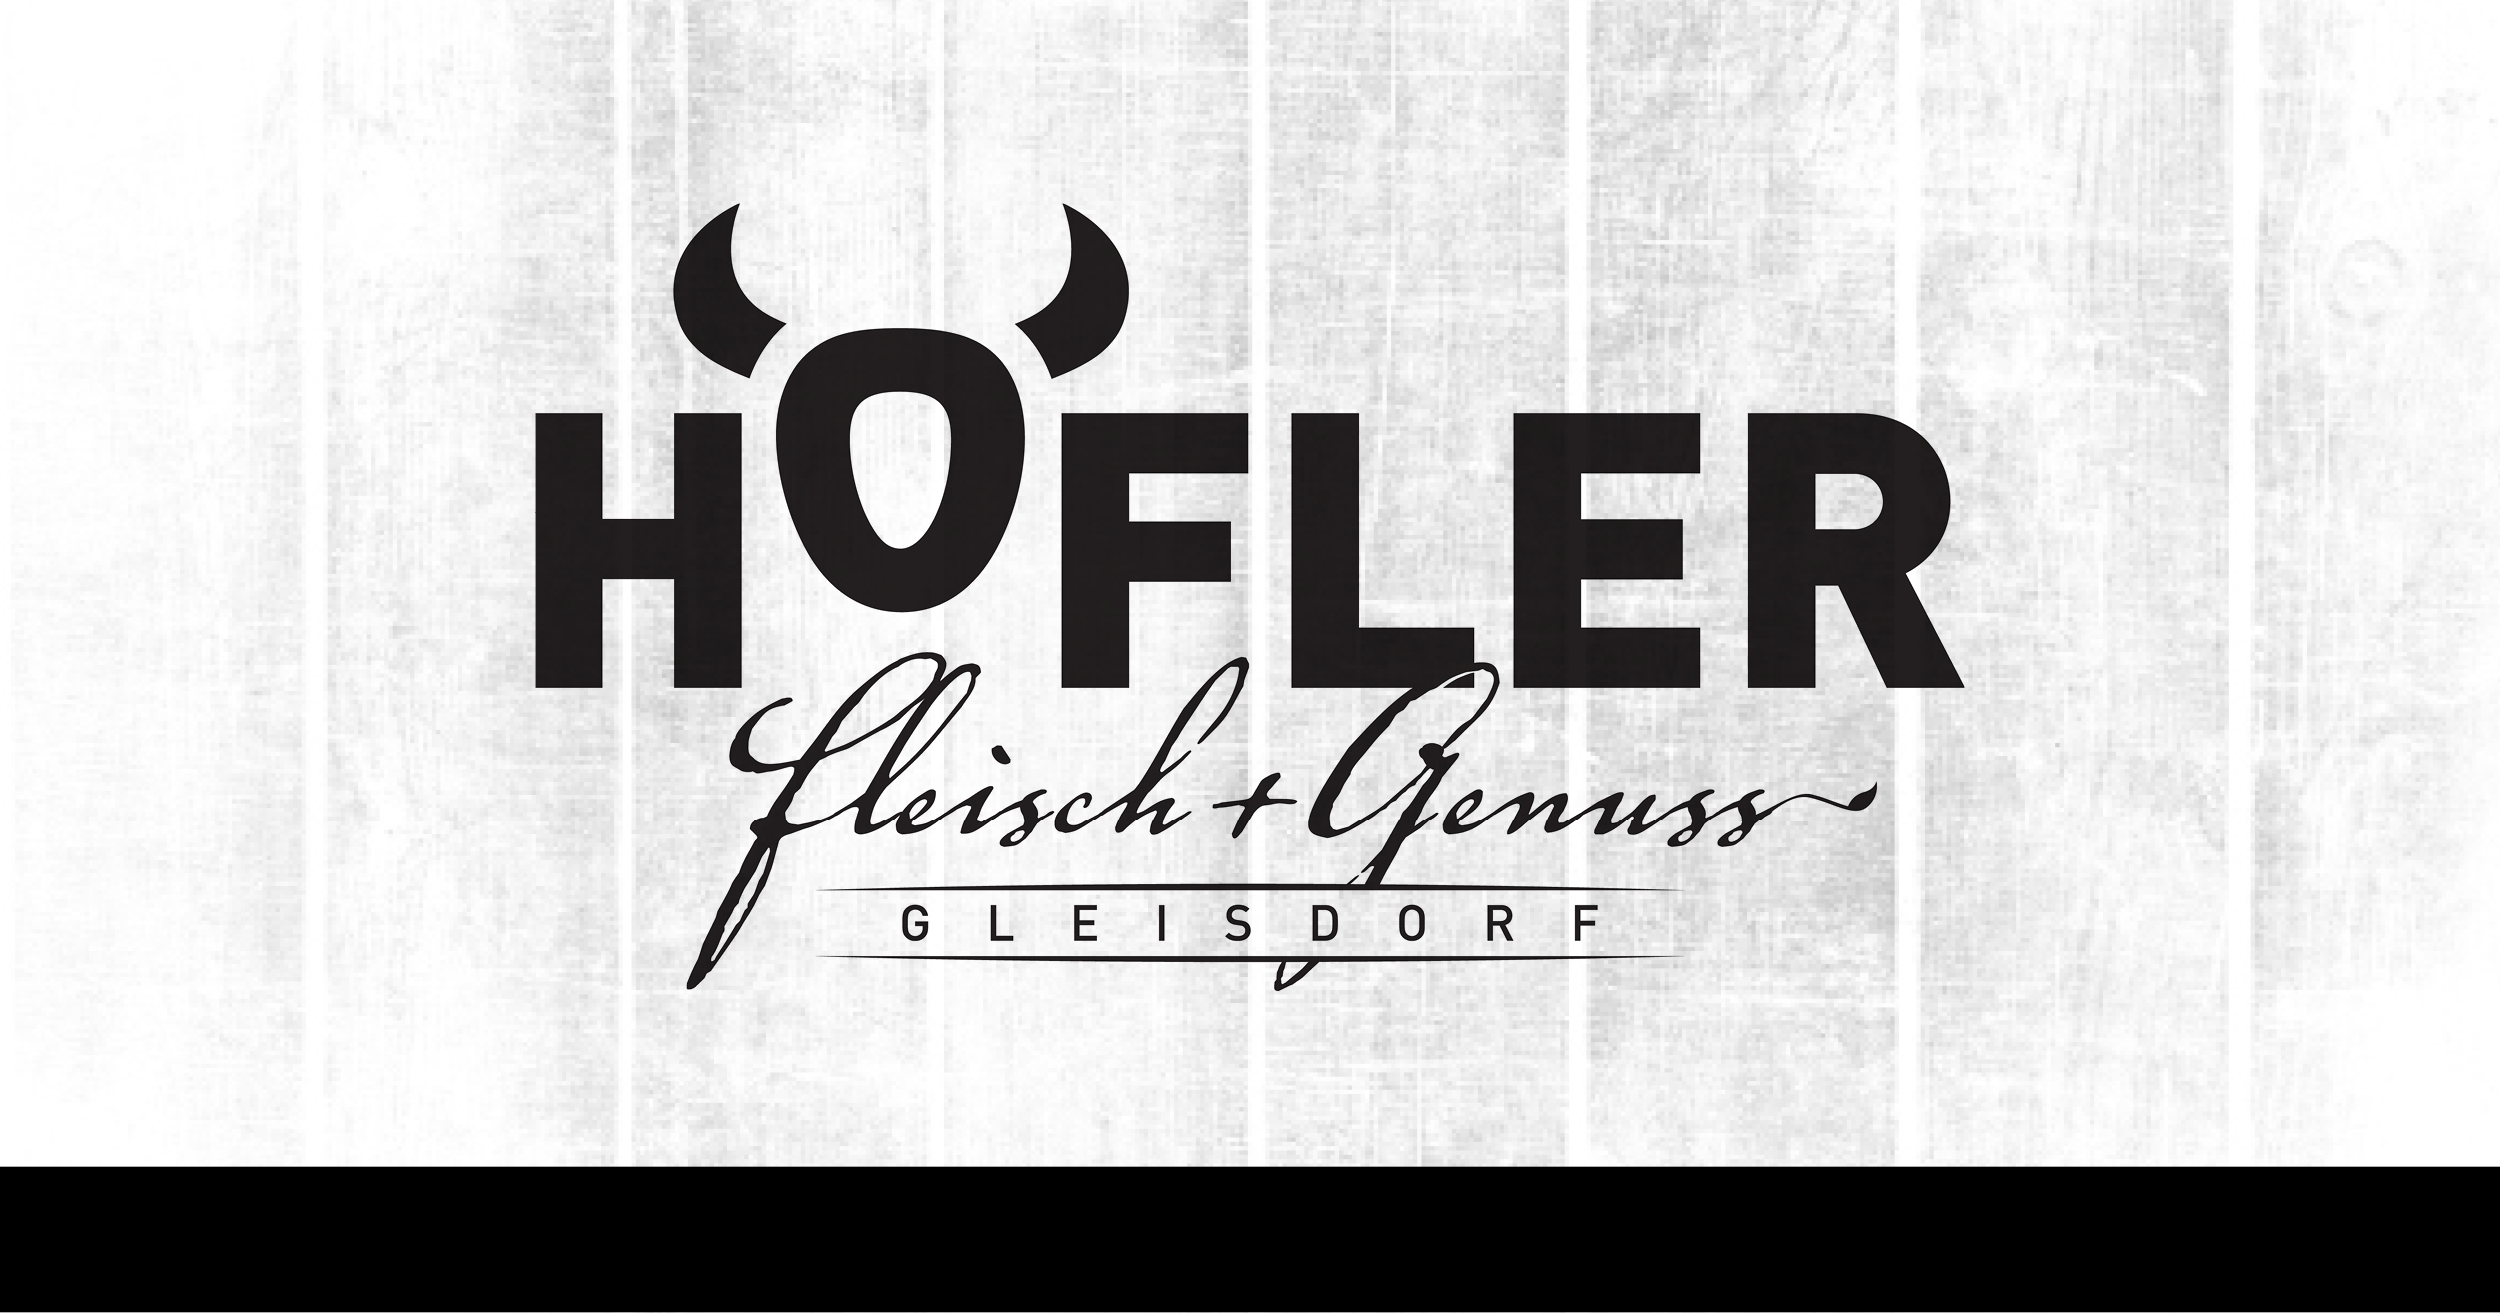 (c) Fleischerei-hoefler.at